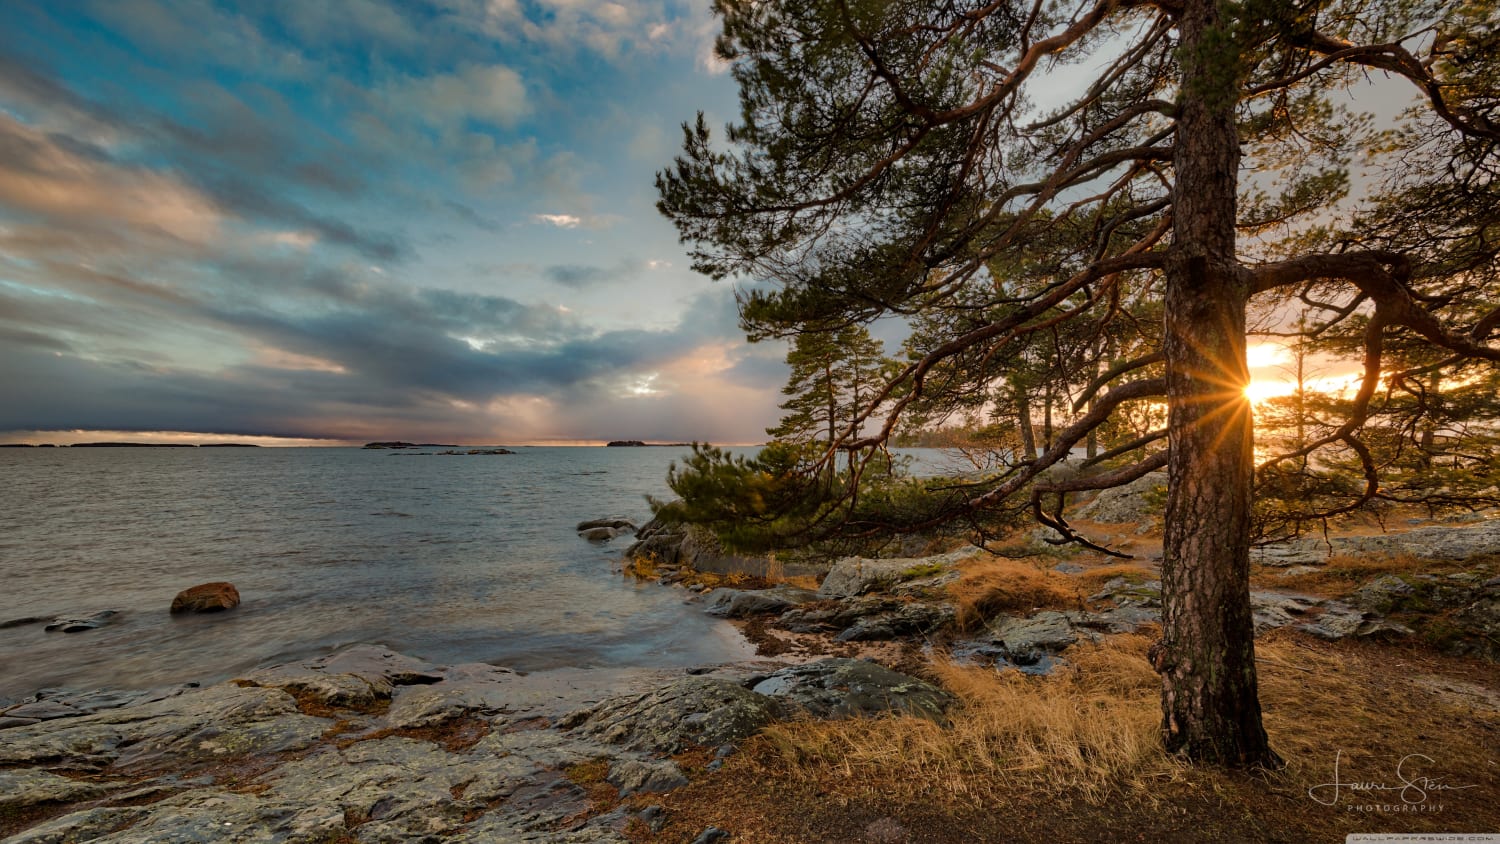 Finnish landscape (Photo credit to Lauri Sten)